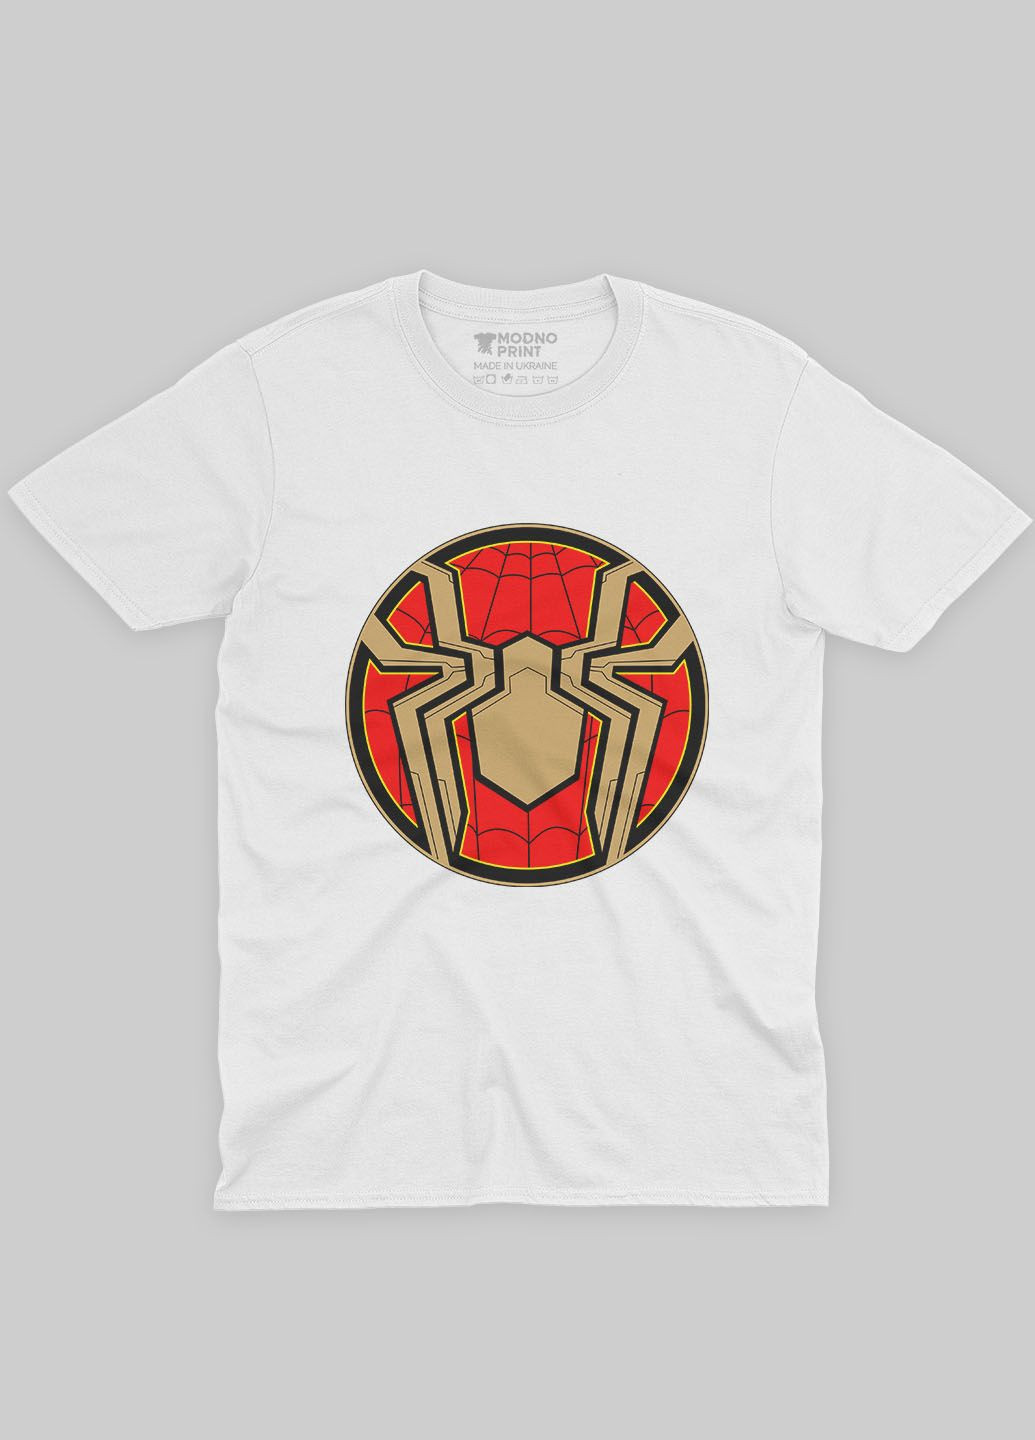 Белая демисезонная футболка для девочки с принтом супергероя - человек-паук (ts001-1-whi-006-014-105-g) Modno